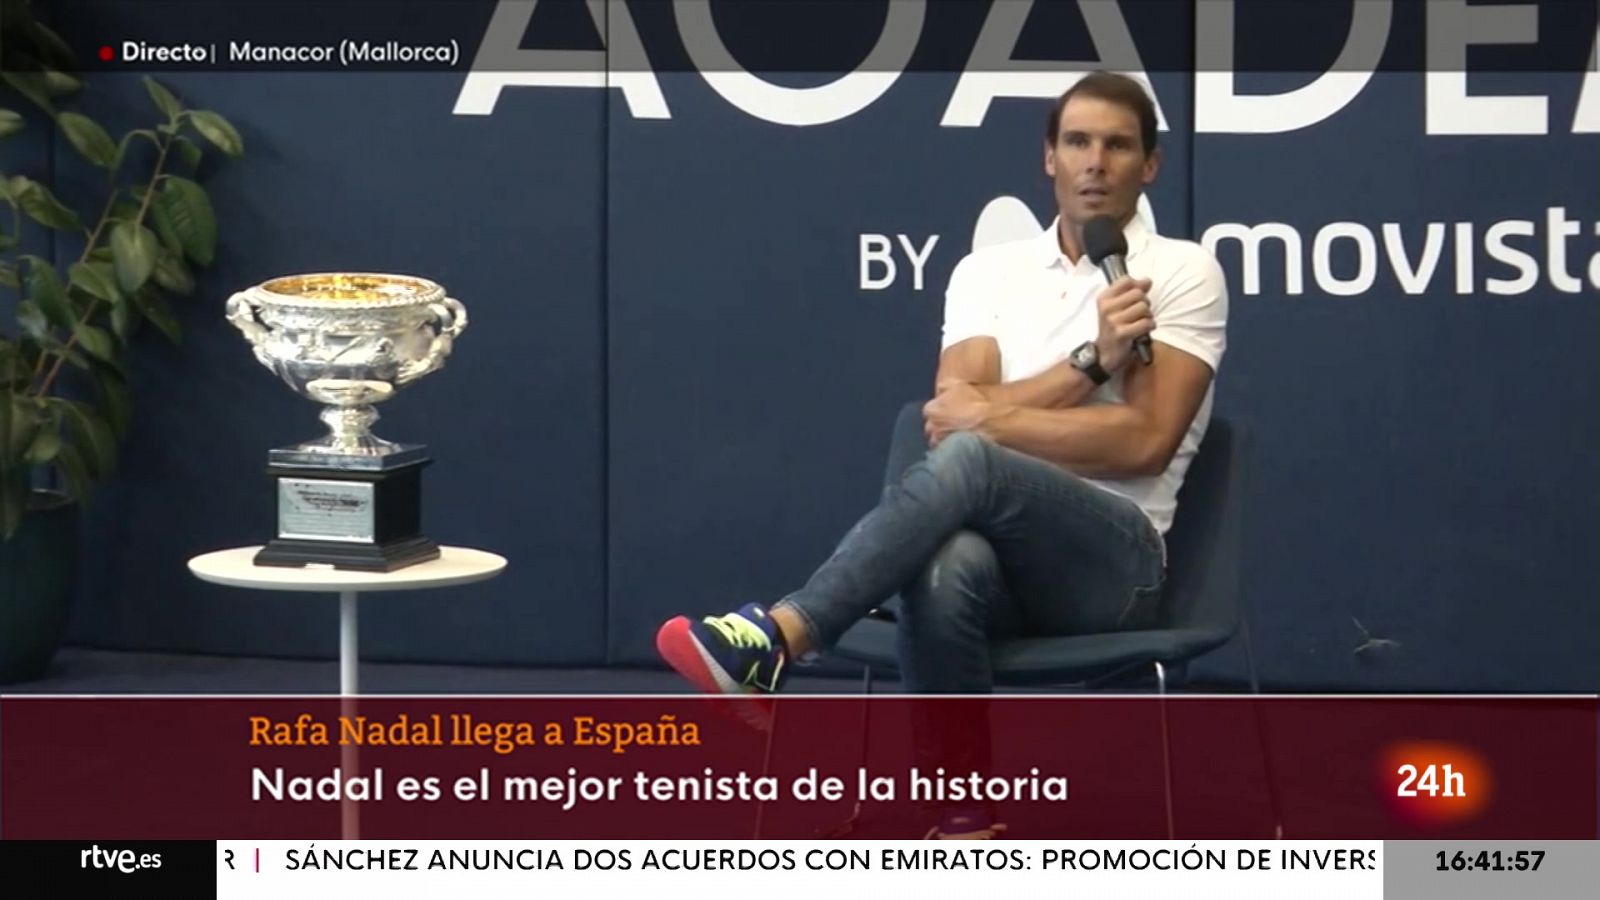 Rafa Nadal: "El tenis siempre te da opciones"